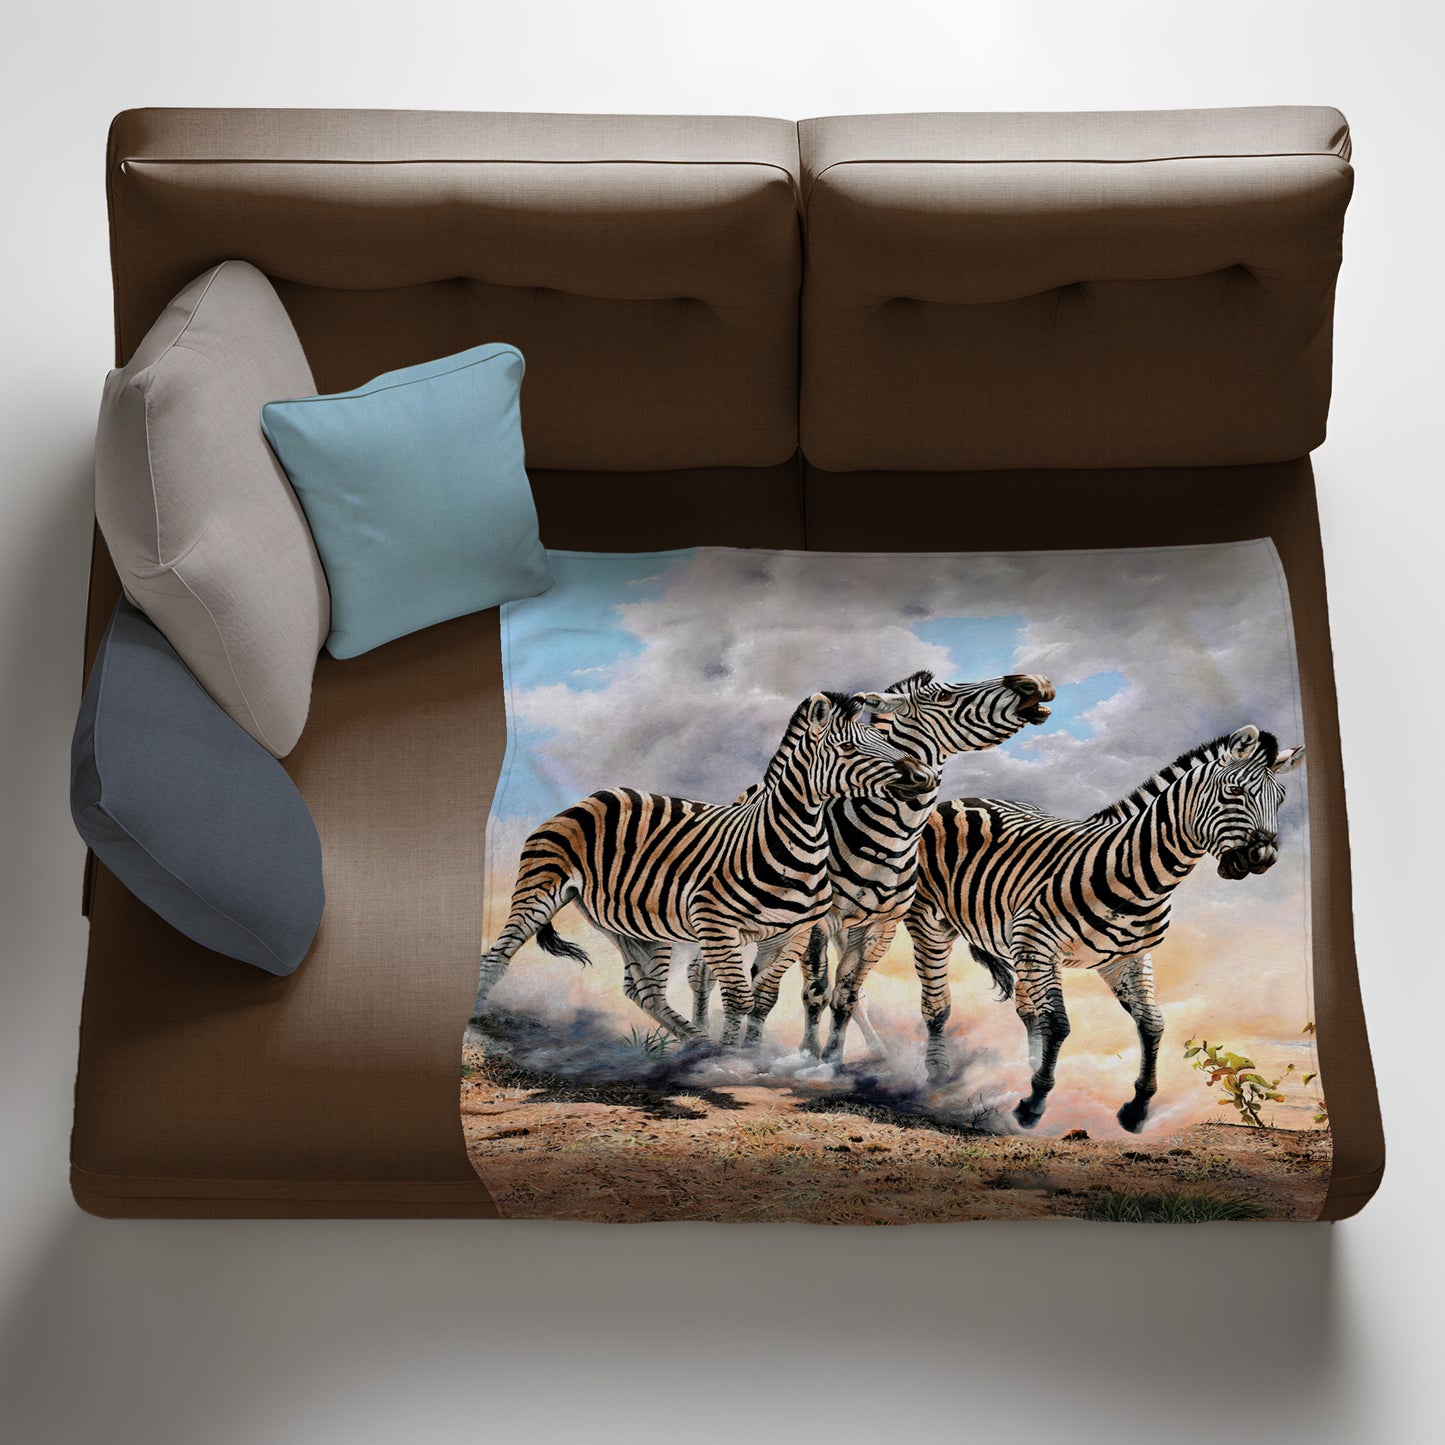 Zebra Fleece Blanket by Delene Lambert.